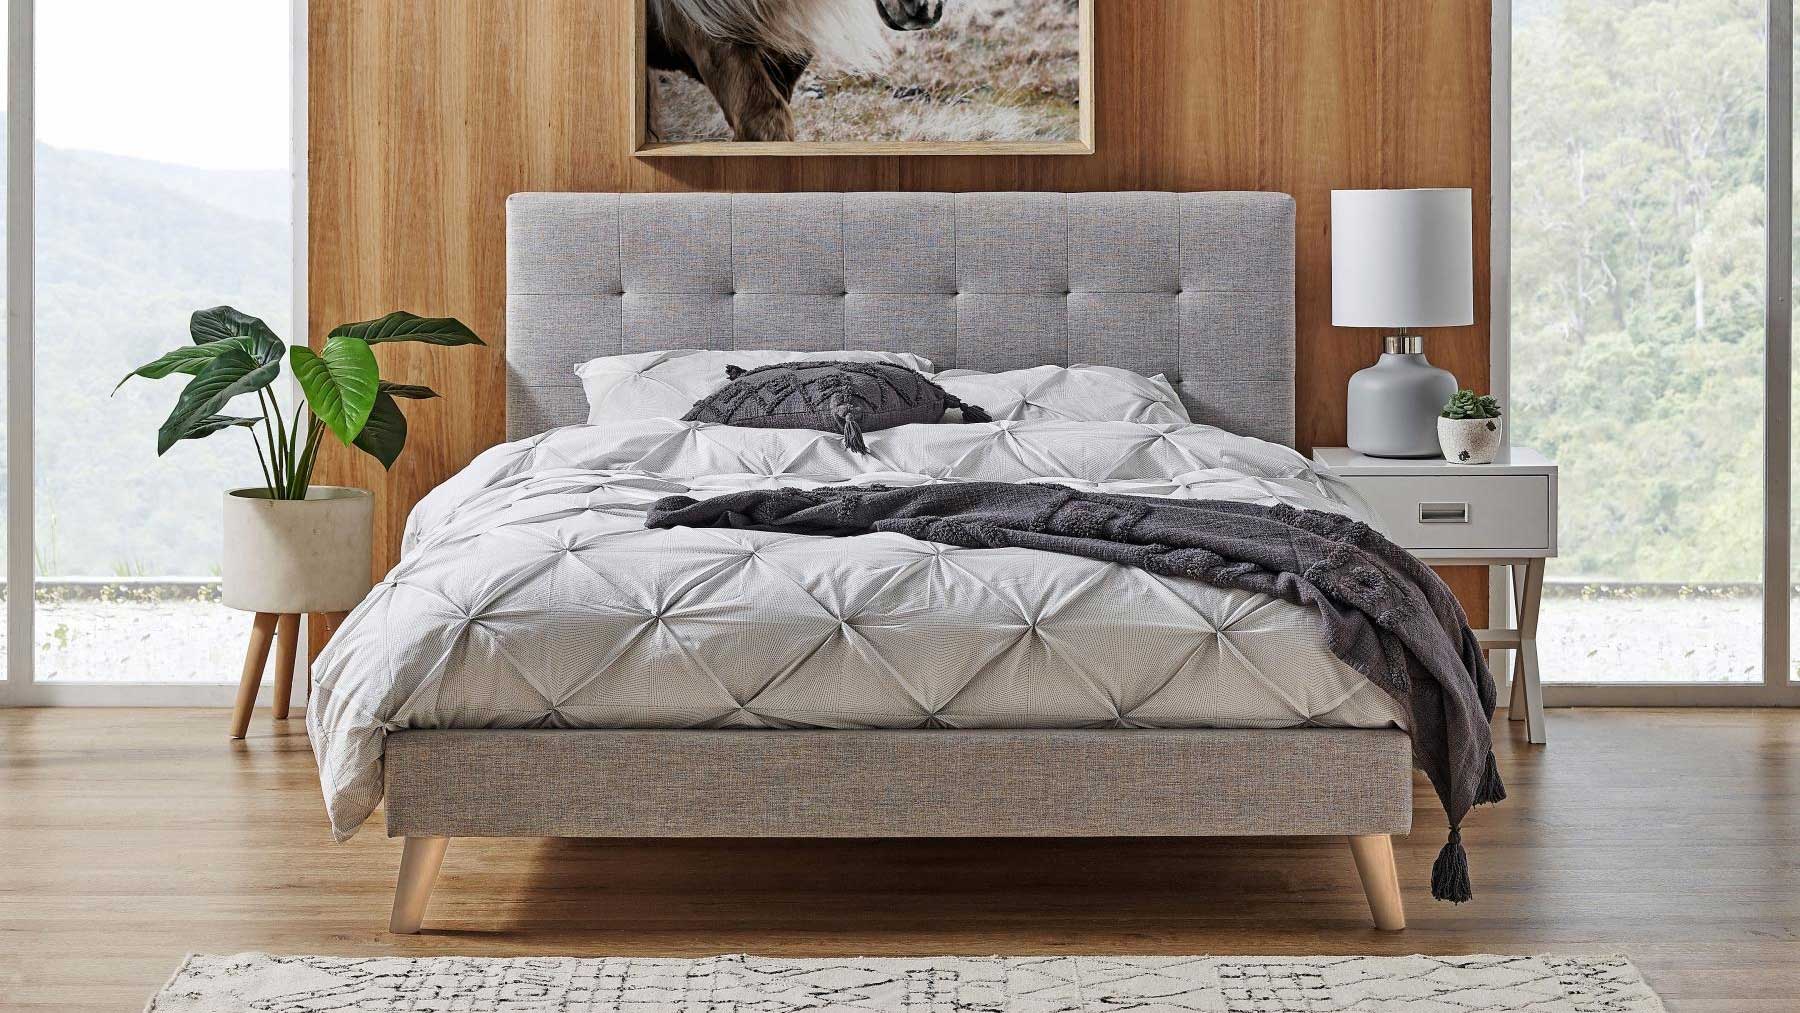 Giường ngủ gỗ chất lượng cao GHC-929-2